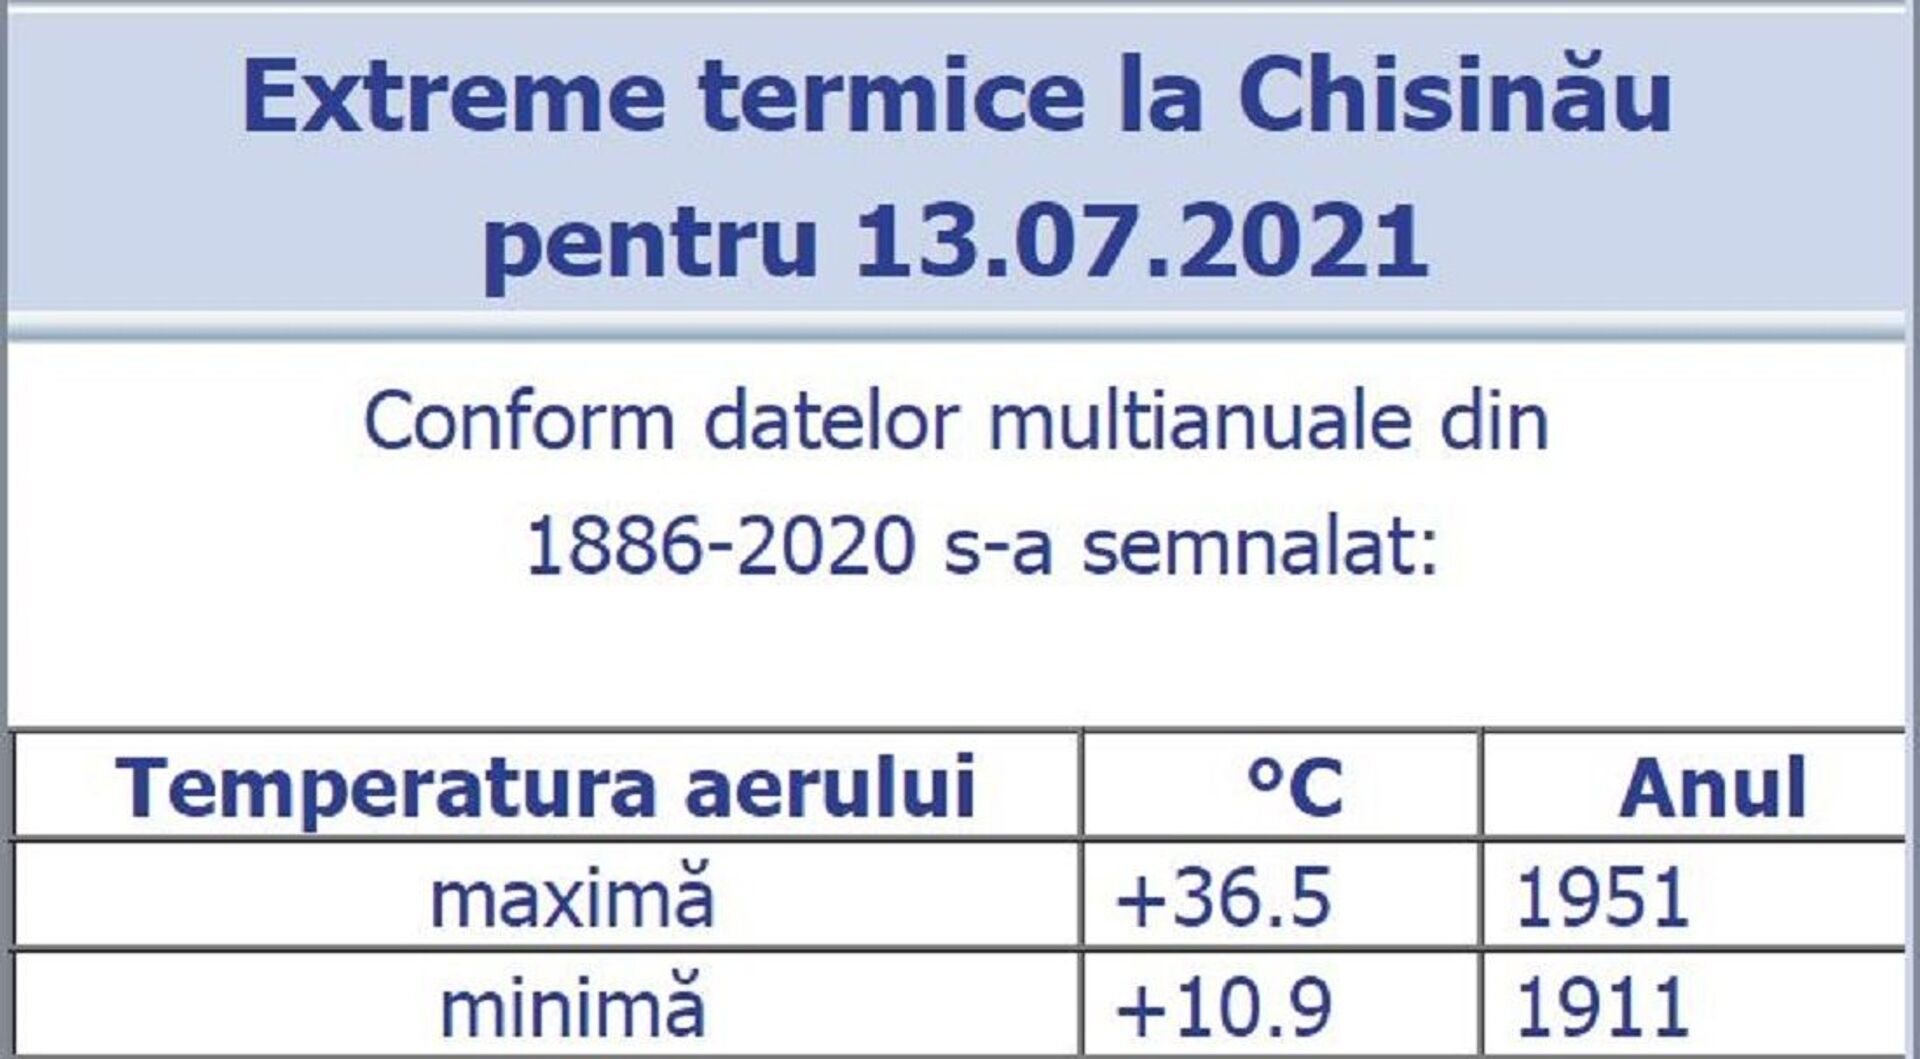 Maxime și minime termice pentru ziua de 13 iulie, în perioadă de monitorizare 1886-2020 - Sputnik Moldova, 1920, 20.07.2021